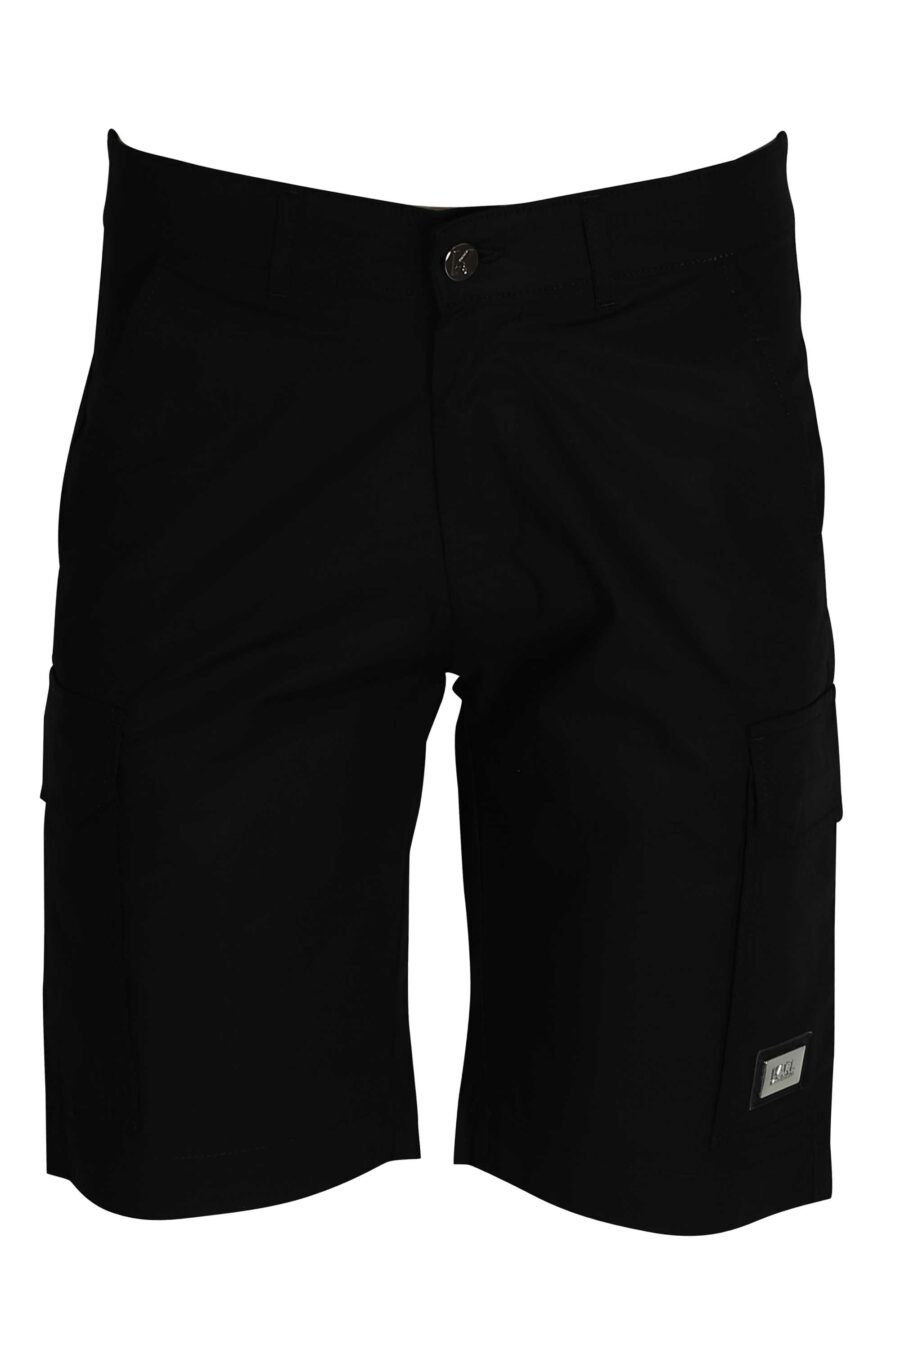 Pantalón negro corto estilo cargo con logo - 4062226166942